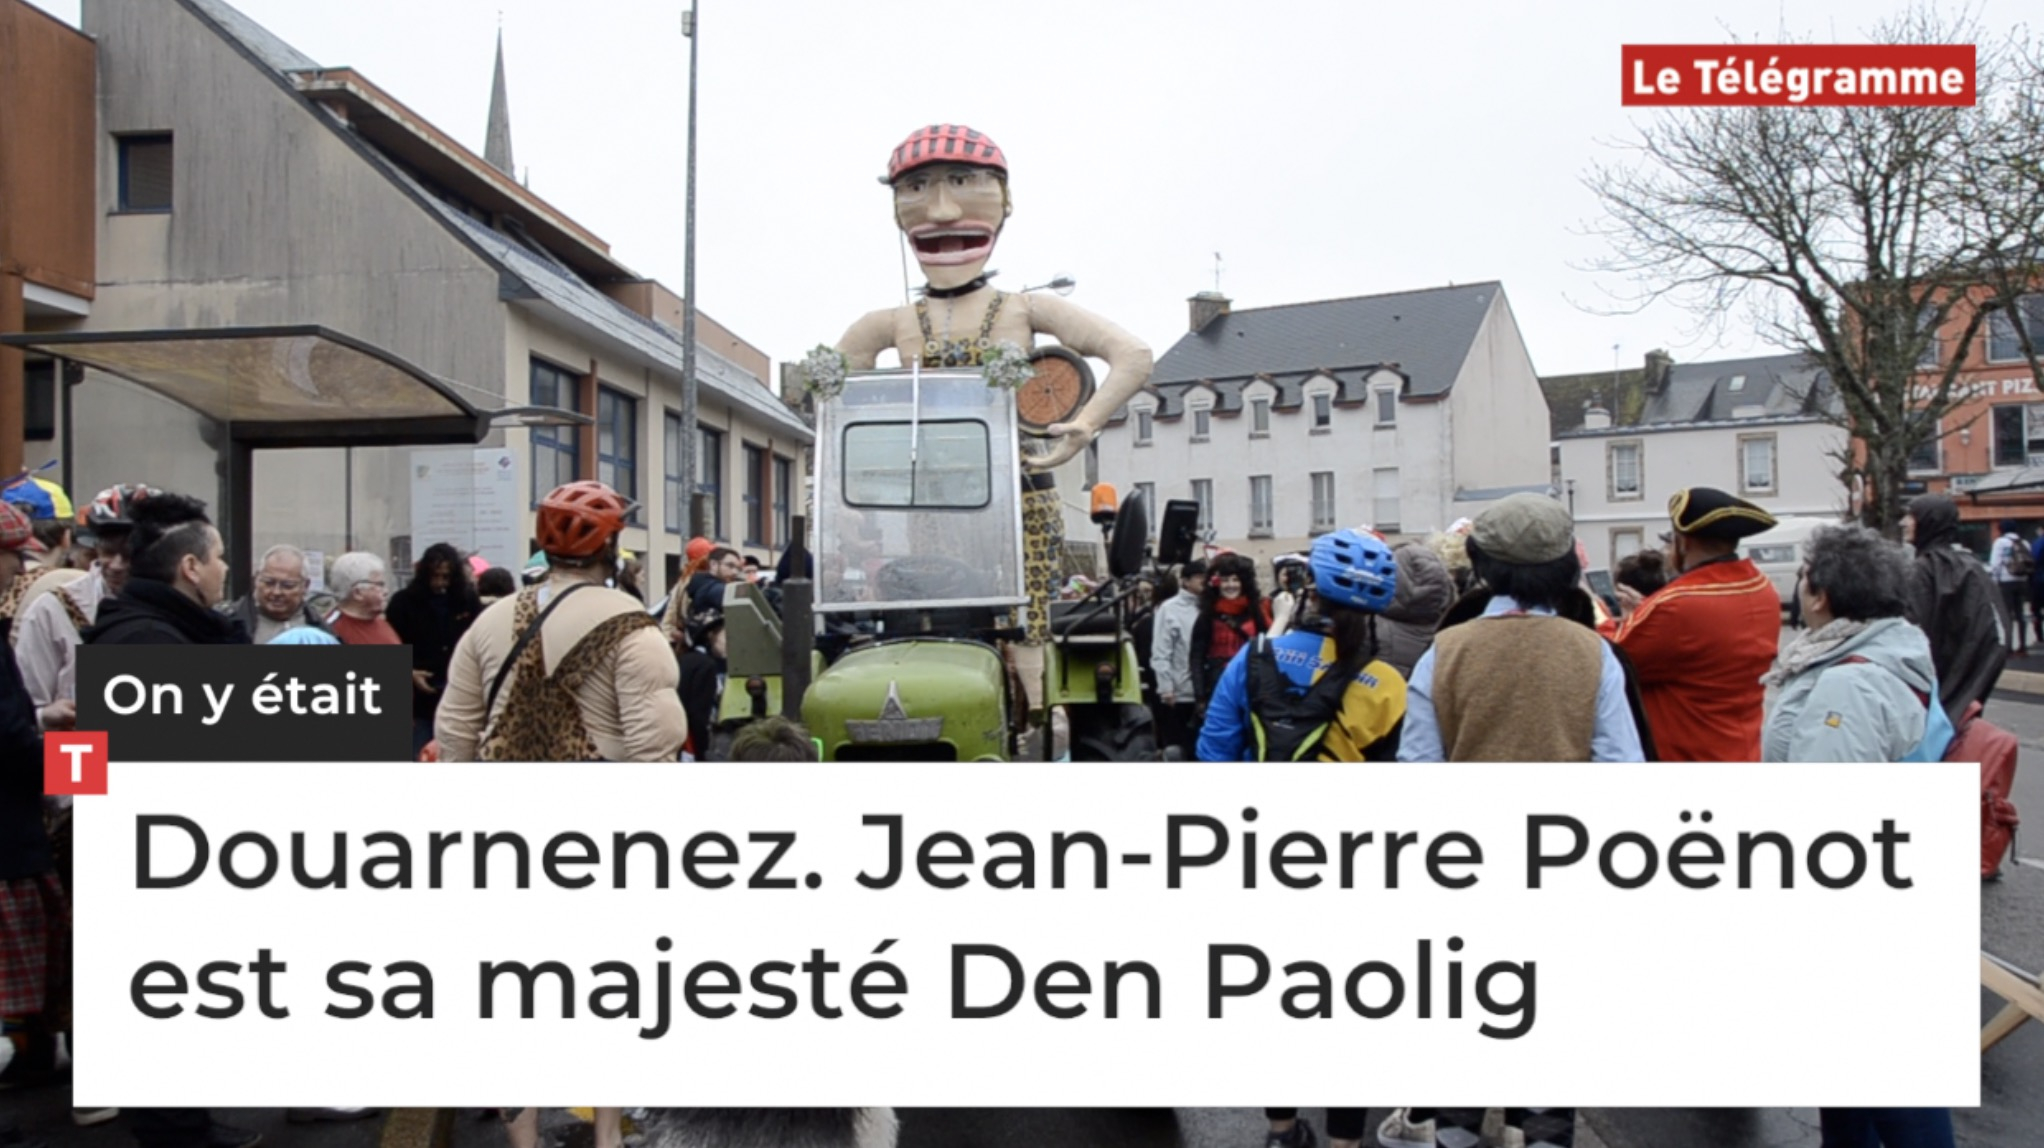 Douarnenez. Jean-Pierre Poënot est sa majesté Den Paolig (Le Télégramme)